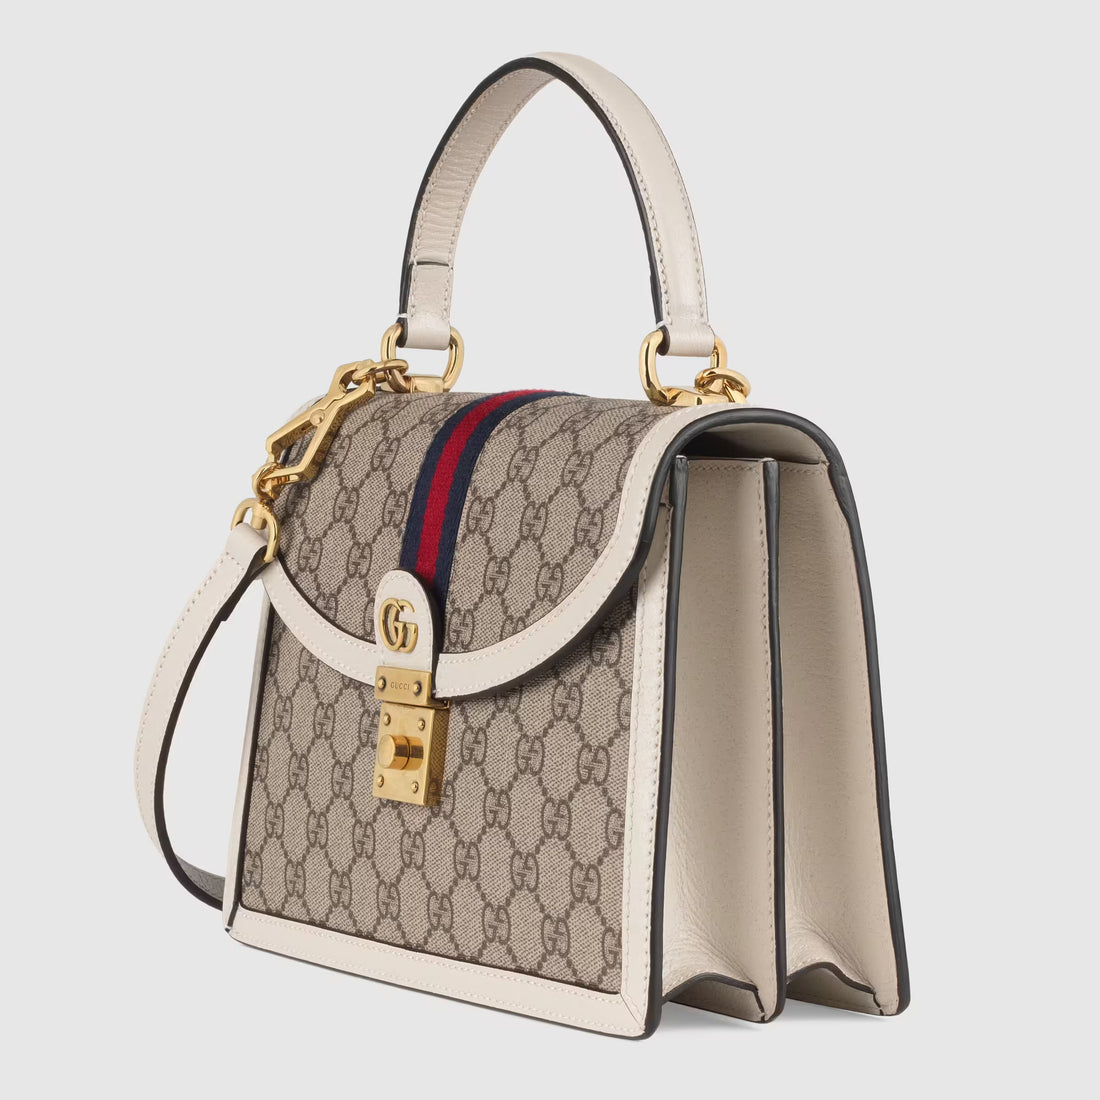 Gucci Petit sac à main Ophidia - Paris Deluxe